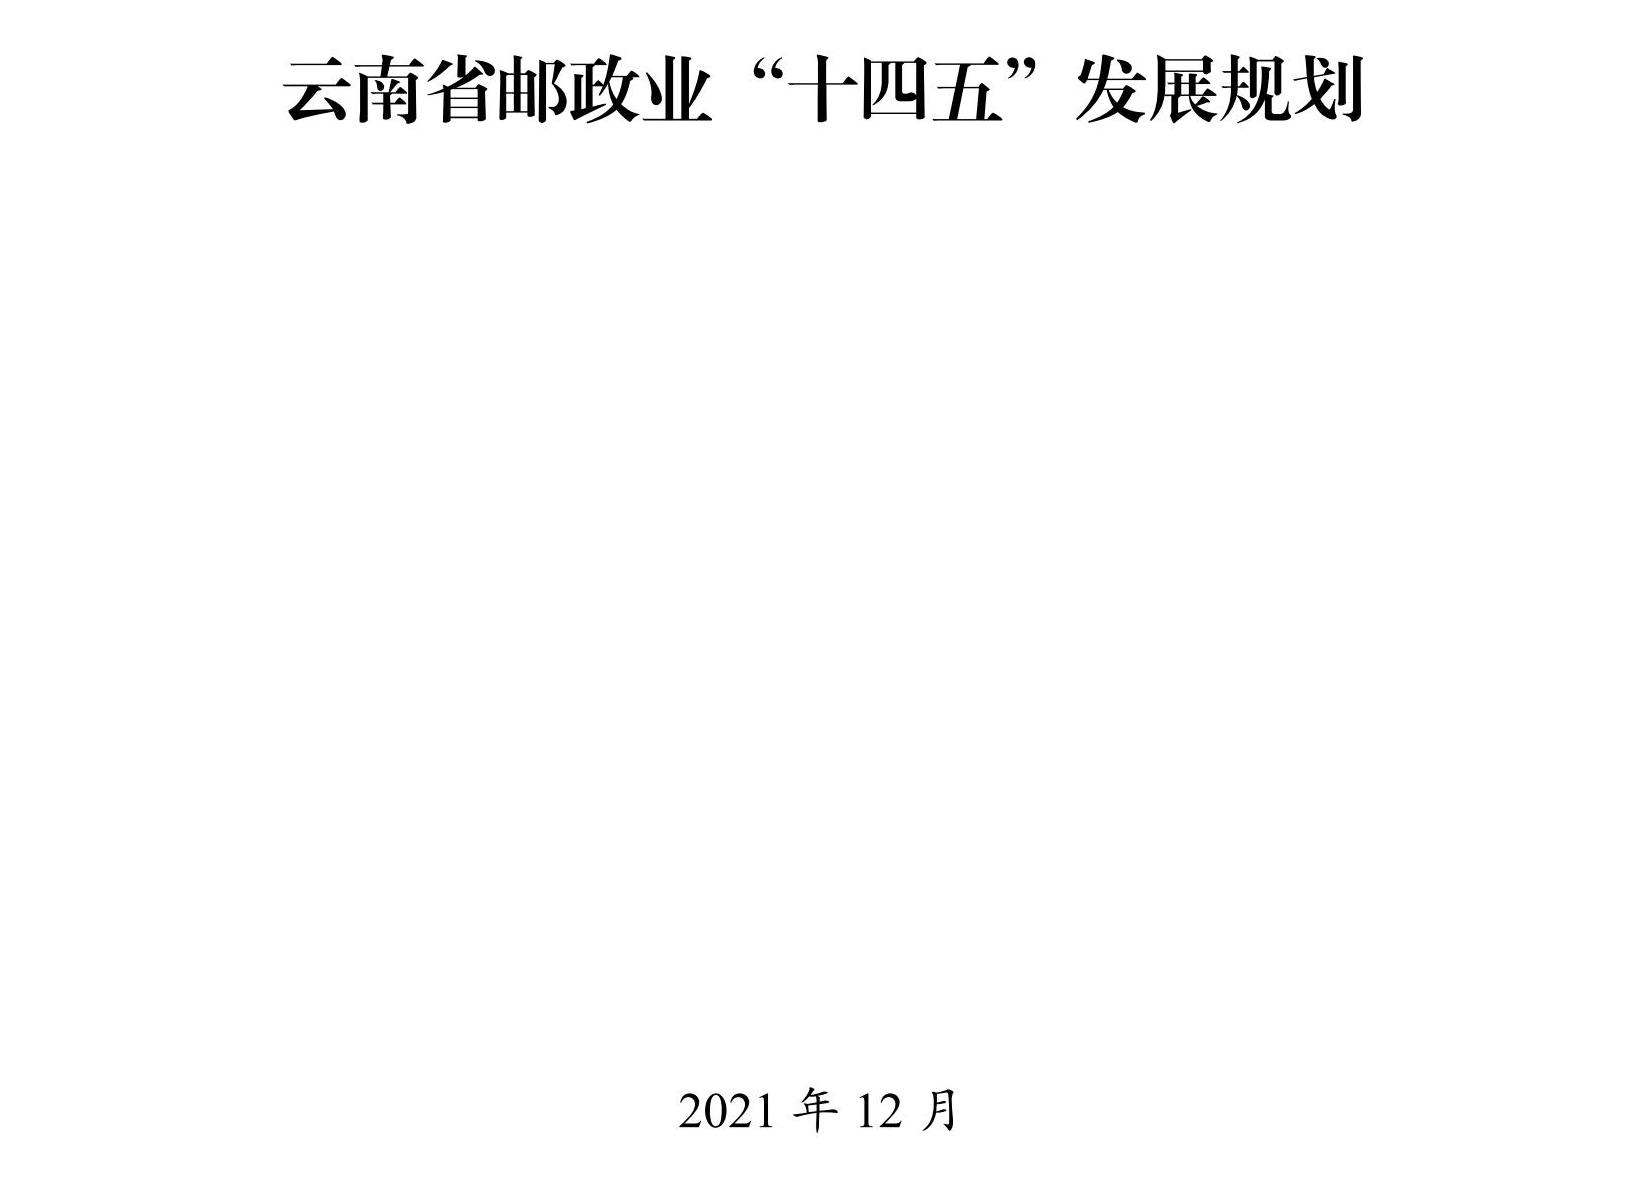 云南省邮政业“十四五”发展规划_00.jpg